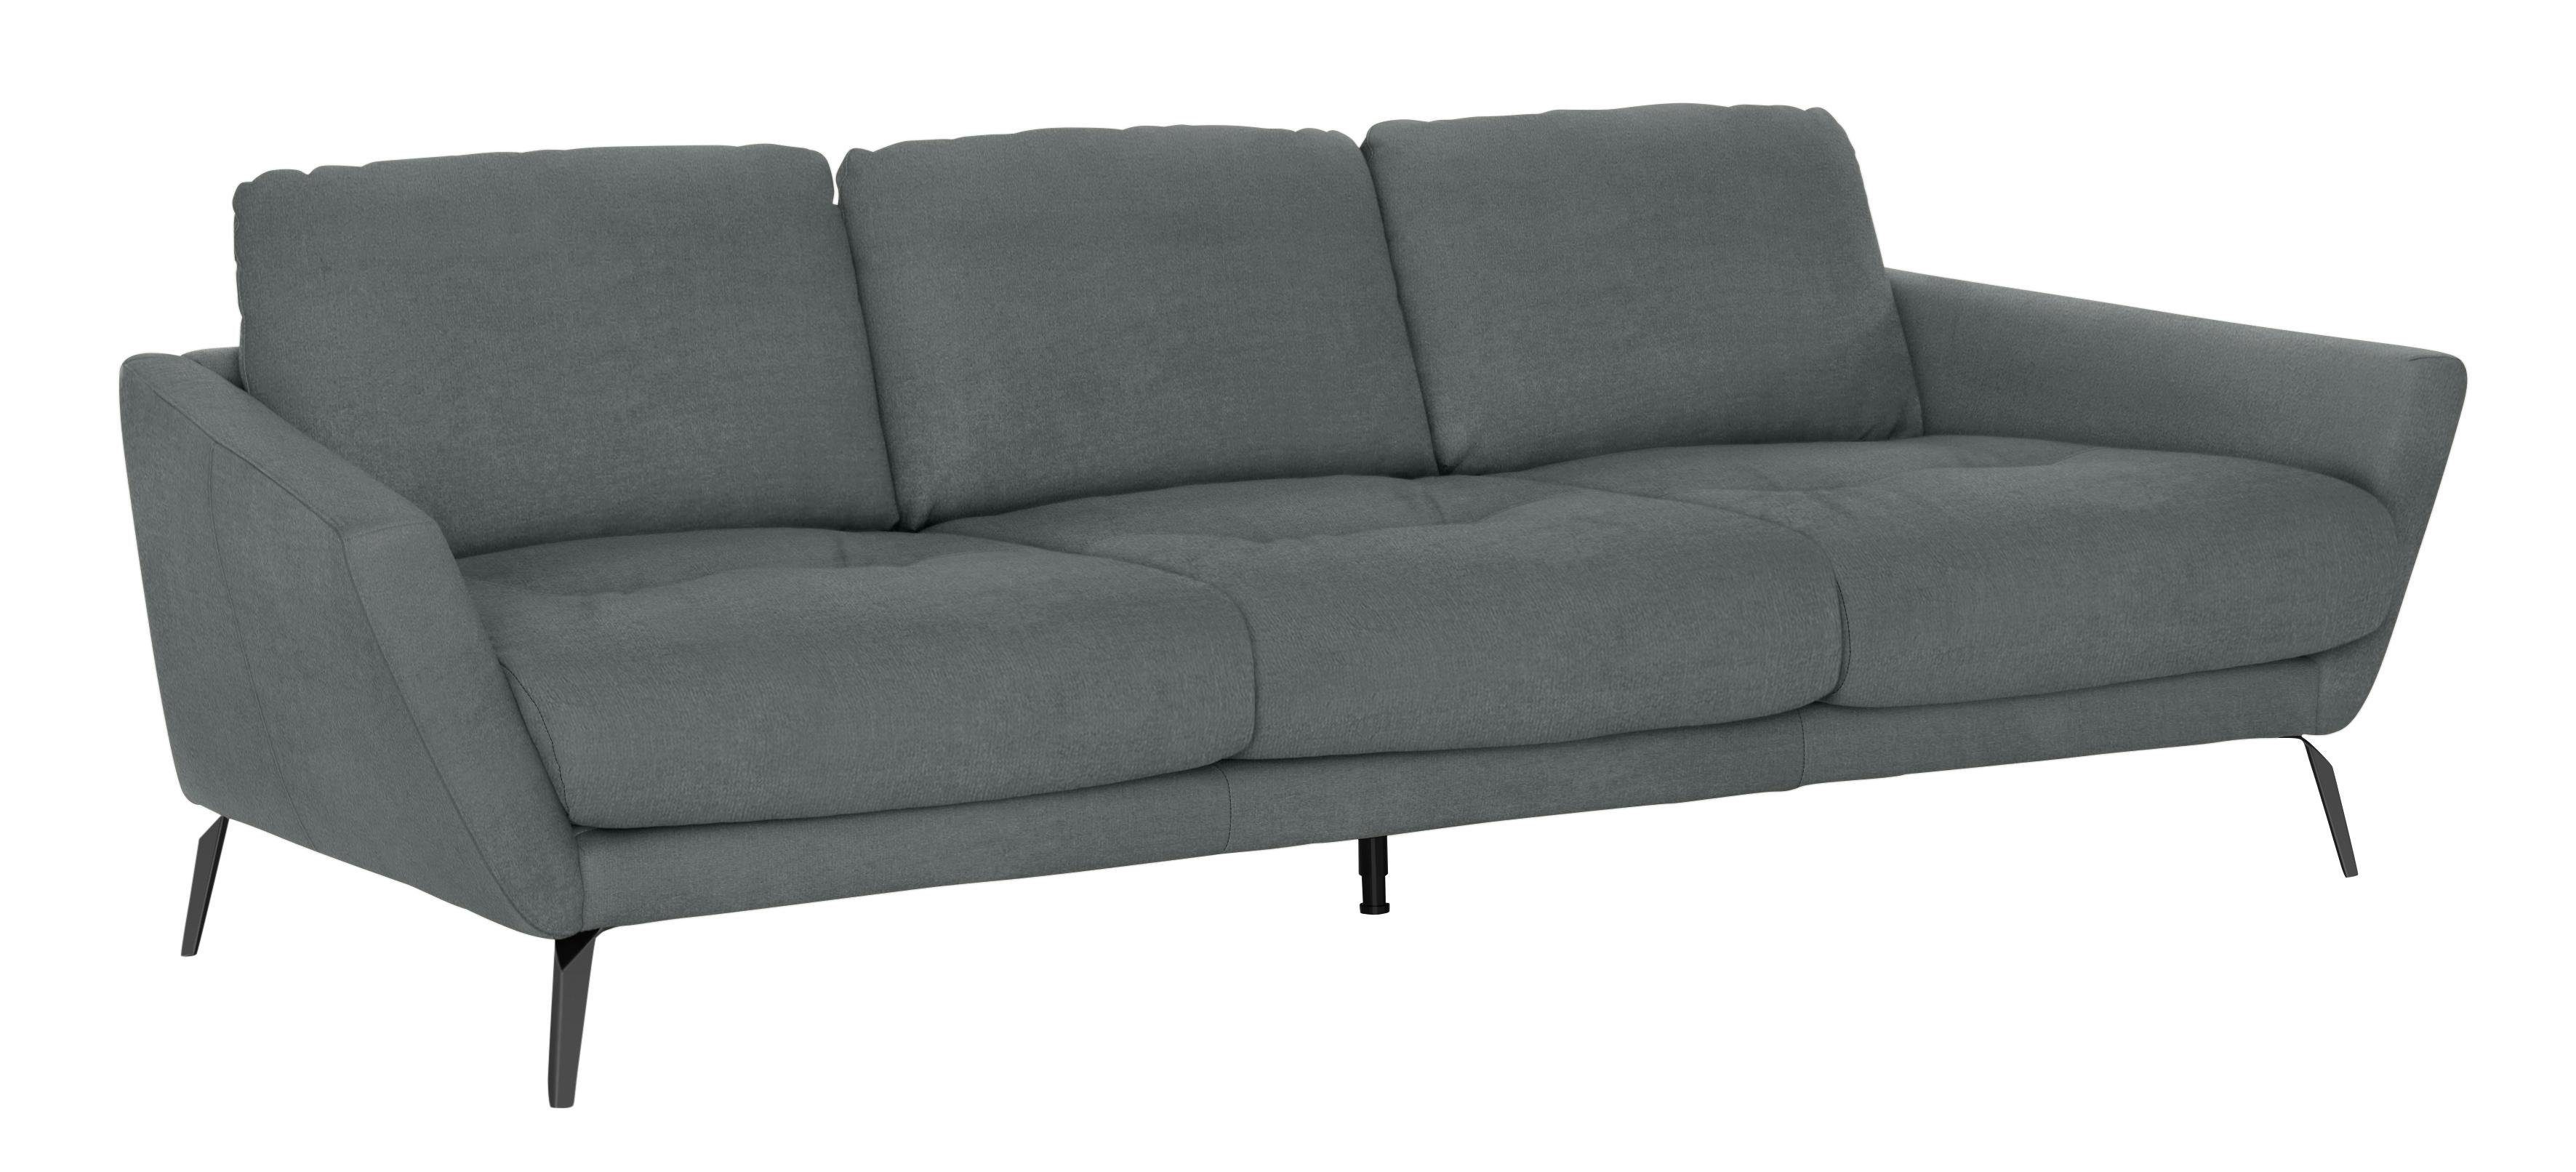 W.SCHILLIG Big-Sofa softy, Füße dekorativer Heftung Sitz, mit pulverbeschichtet schwarz im